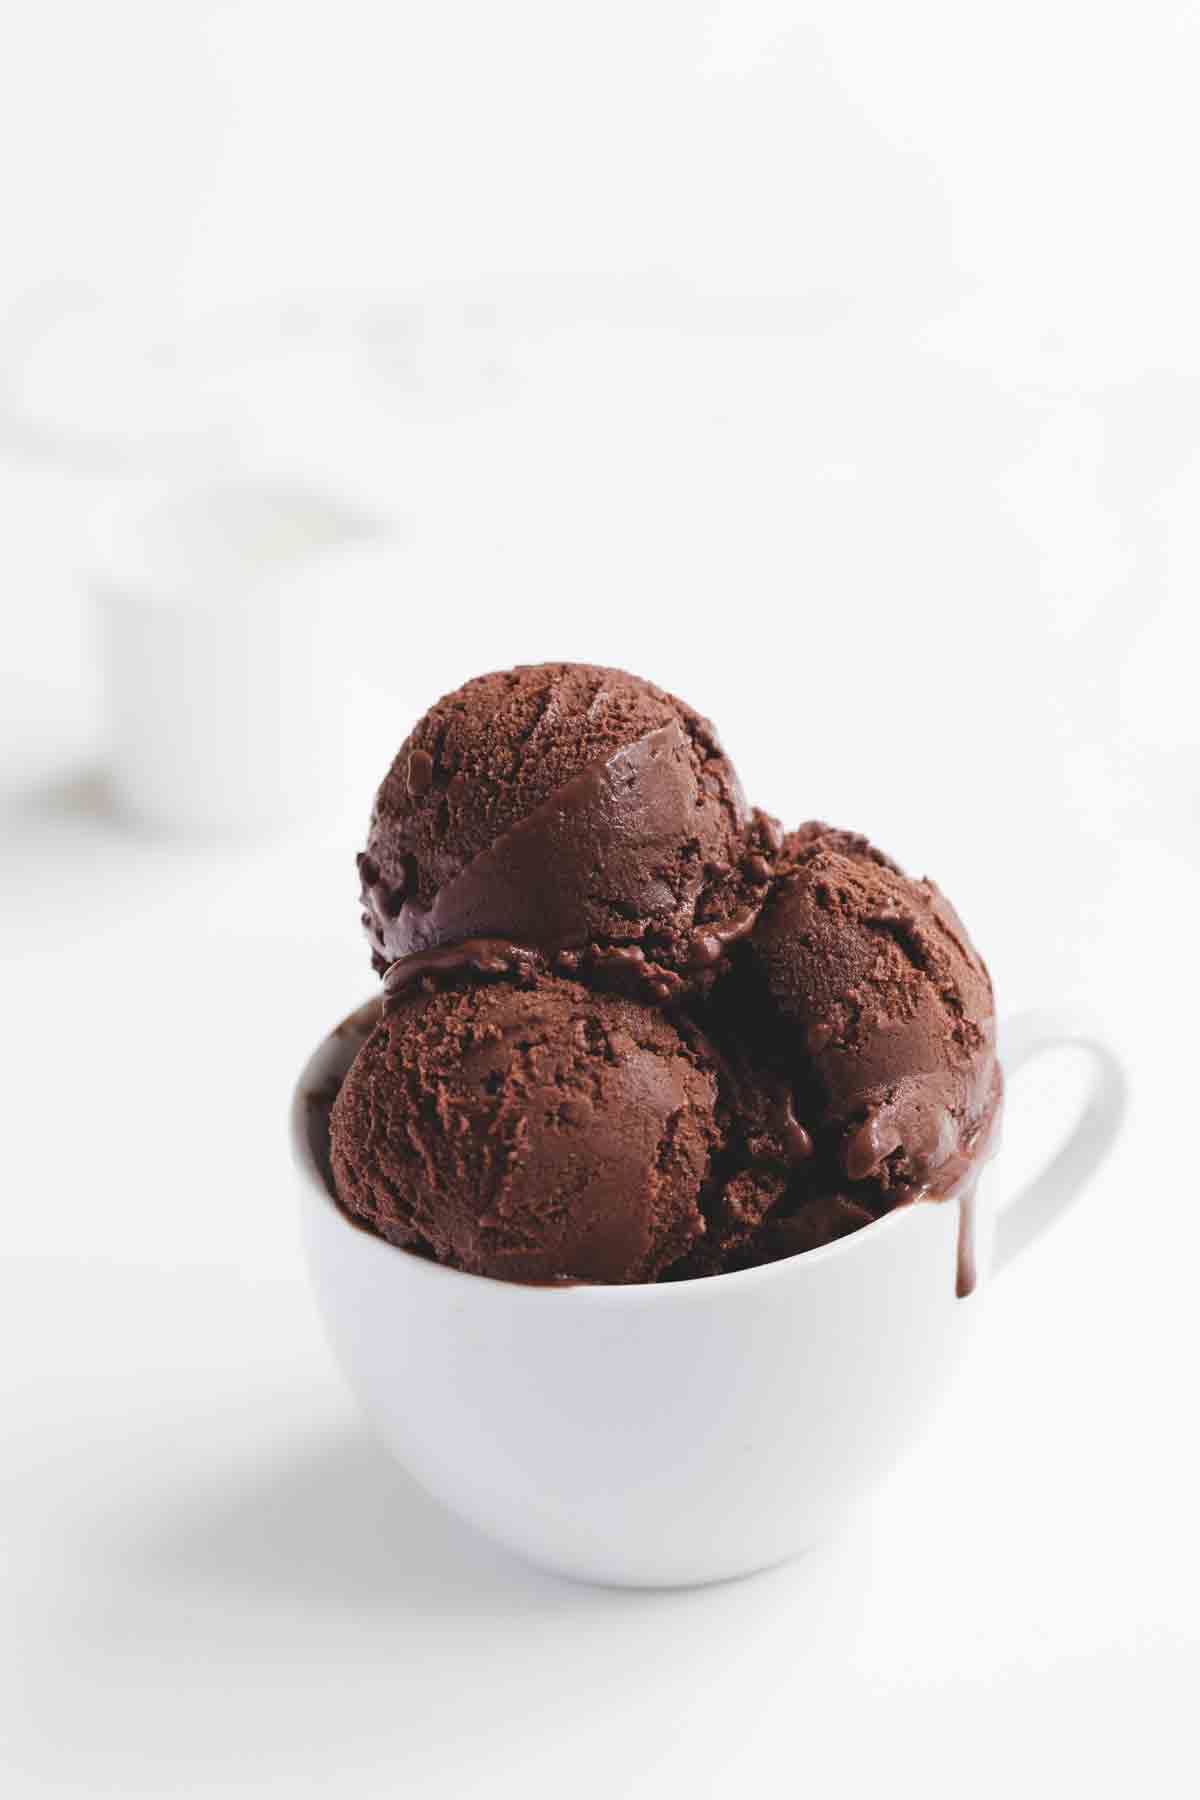 Monarchie Schuldig Regeringsverordening Vegan chocolade-ijs - zonder ijsmachine | ShareLoveNotSecrets.com